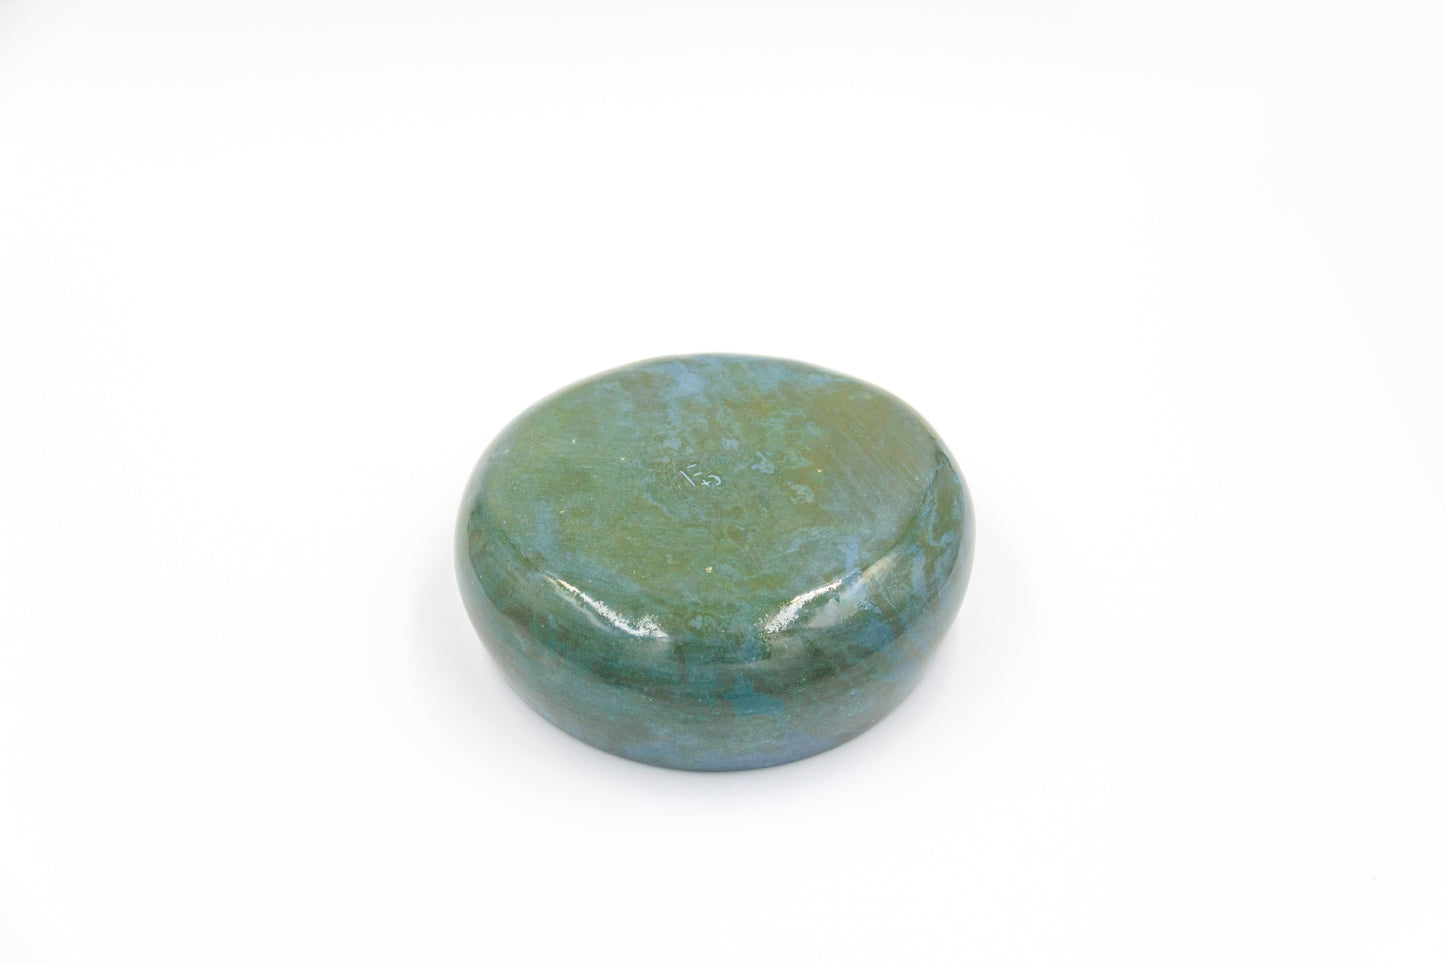 Miska ceramiczna w zielono-niebieskim kolorze